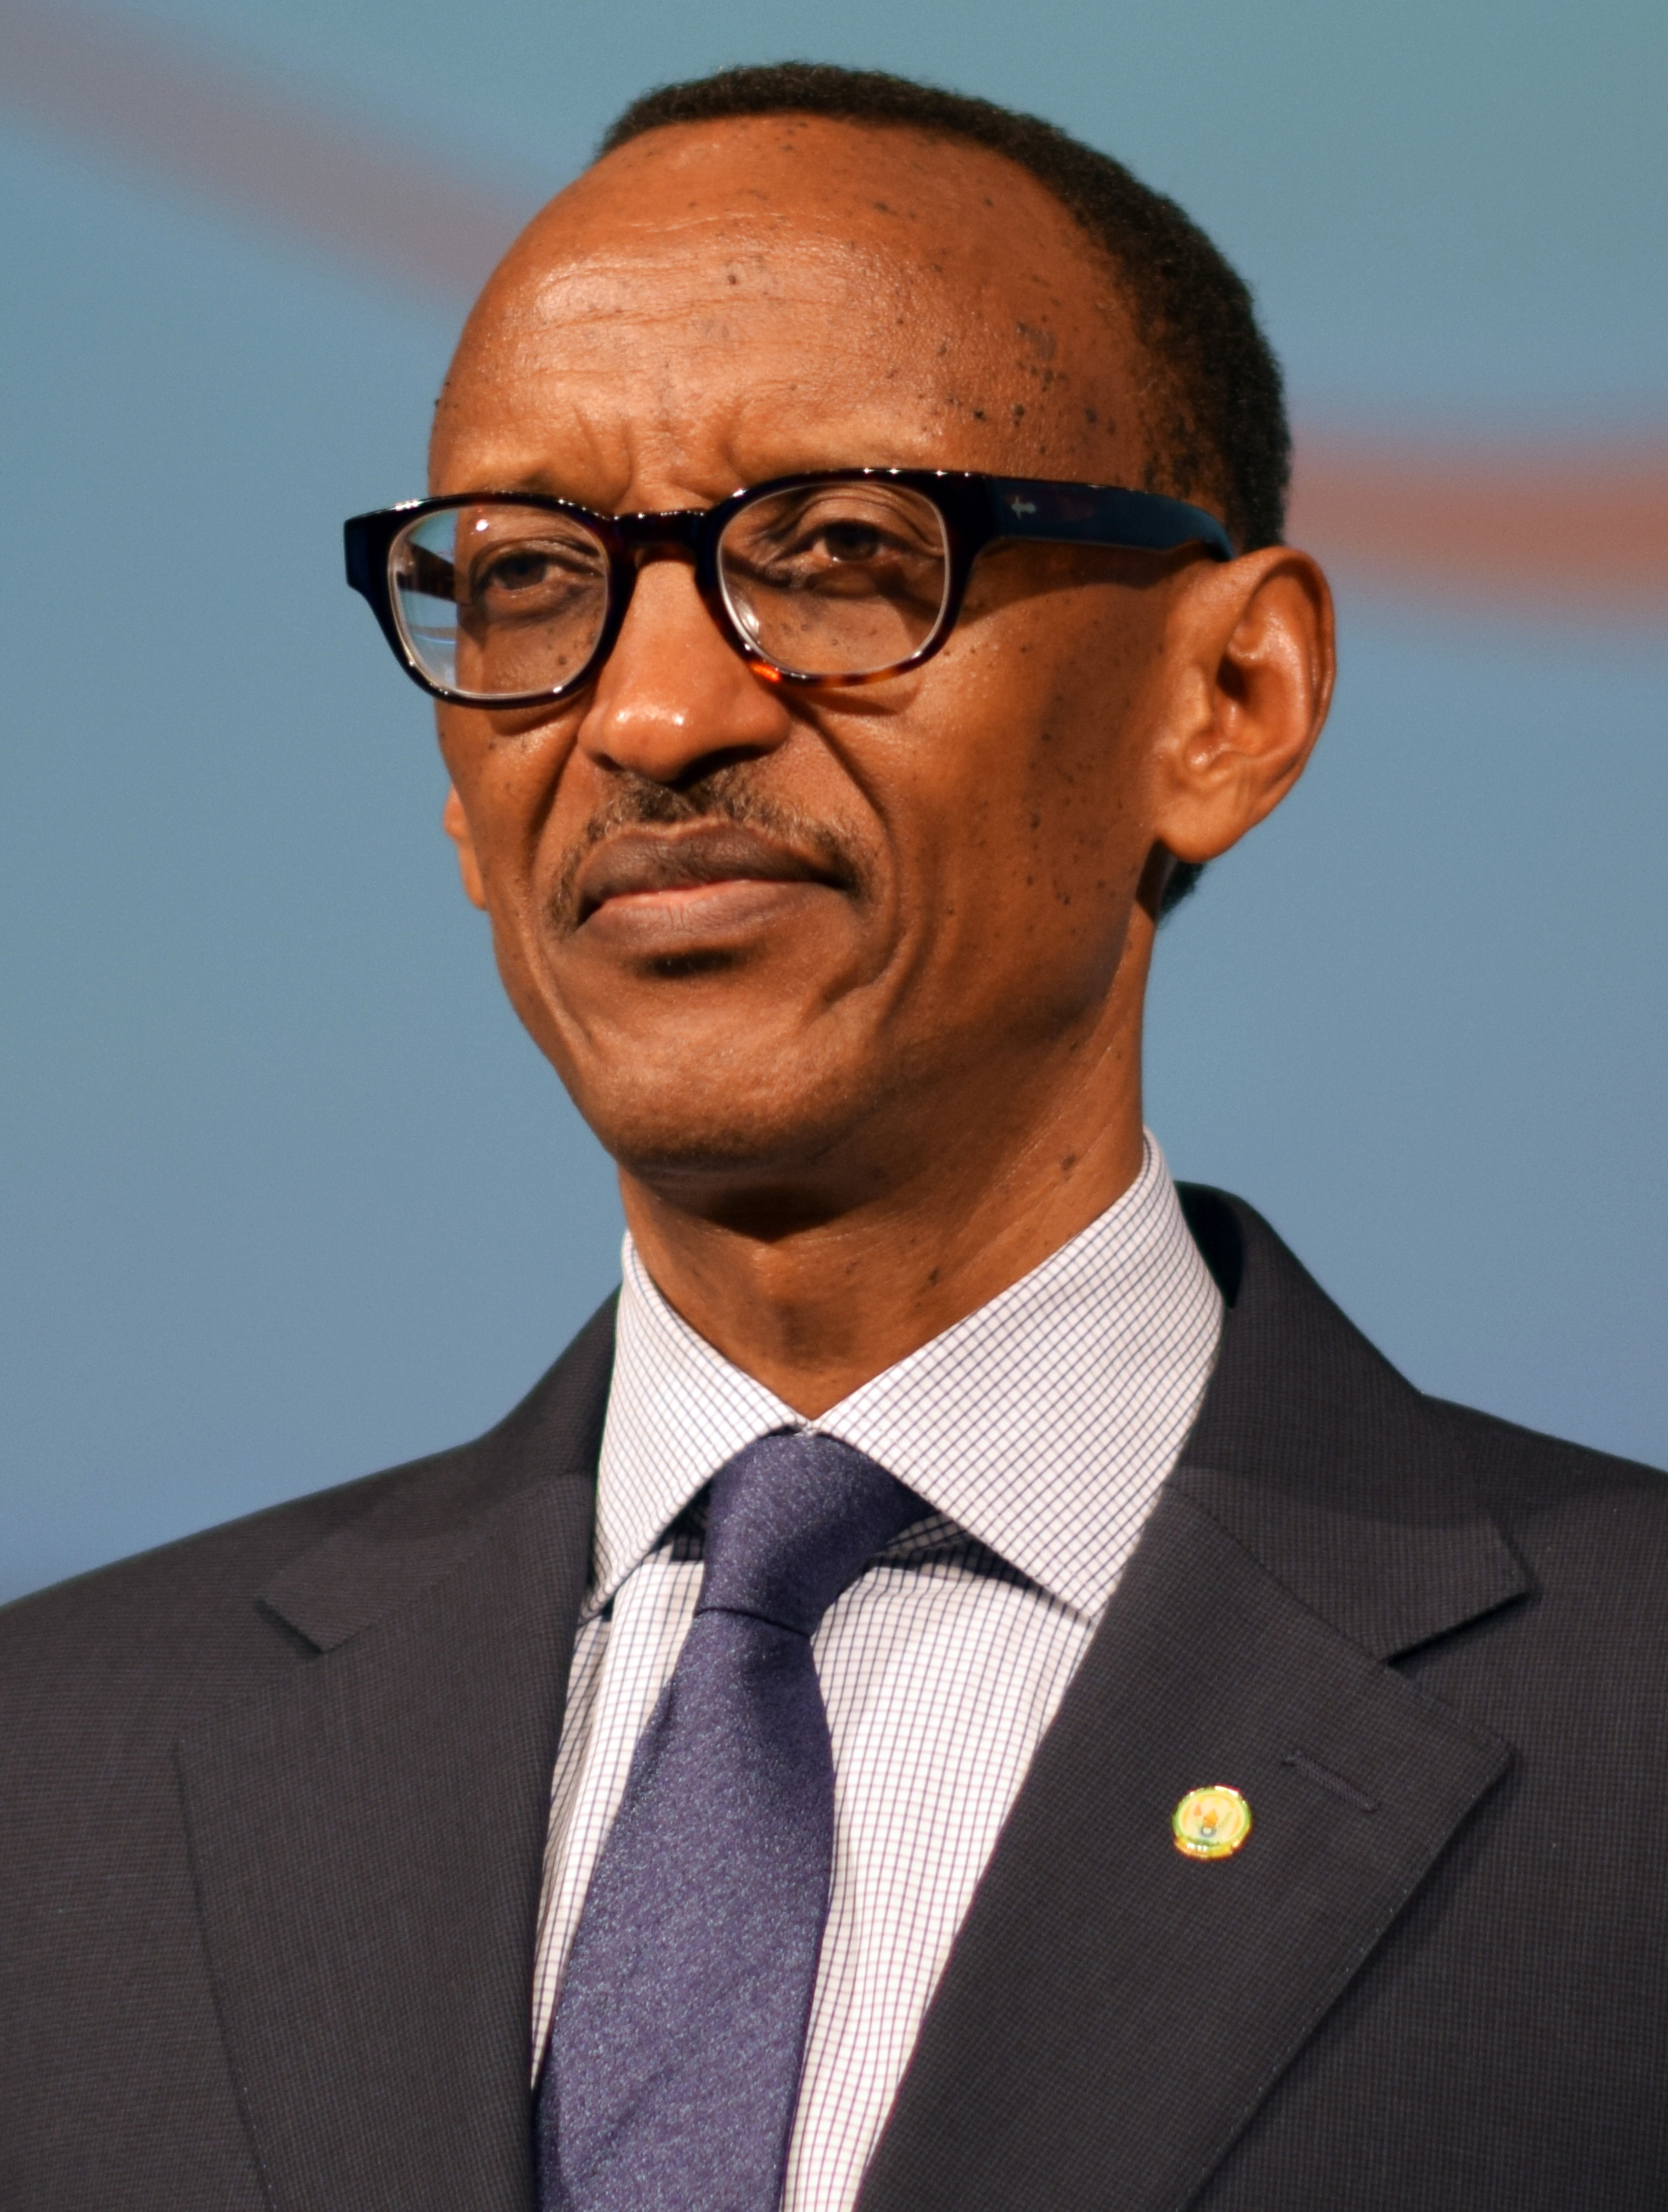 auteur Paul Kagame de la citation Au Rwanda, nous avons une société qui a connu une rupture très sérieuse et vous ne pouvez pas vous attendre à tout d'un coup que les choses seront parfaites. Même ainsi: vous ne pouvez pas trouver plus de zones où un segment de la population aurait peur d'aller, comme nous l'avions auparavant. Mais il y a toujours beaucoup plus à faire.